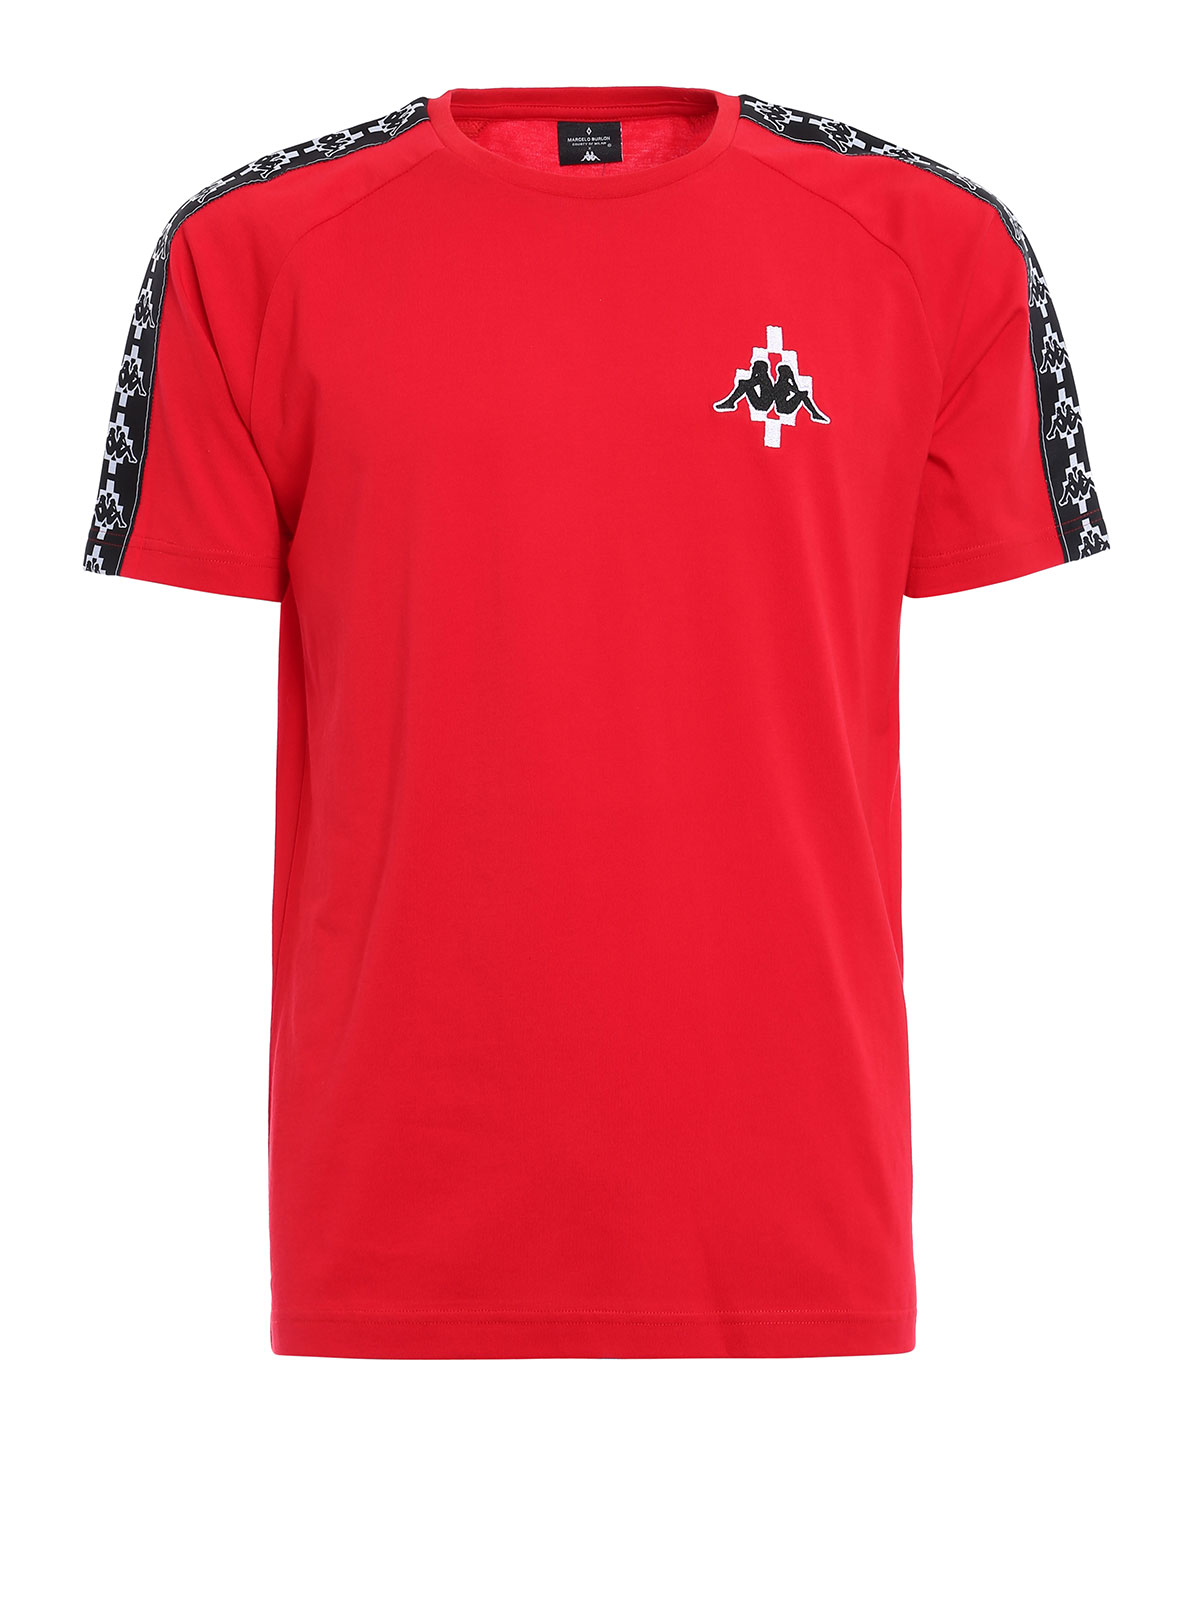 Agente Economía Jirafa Camisetas Marcelo Burlon - Camiseta - Kappa - CMAA048F176062222001